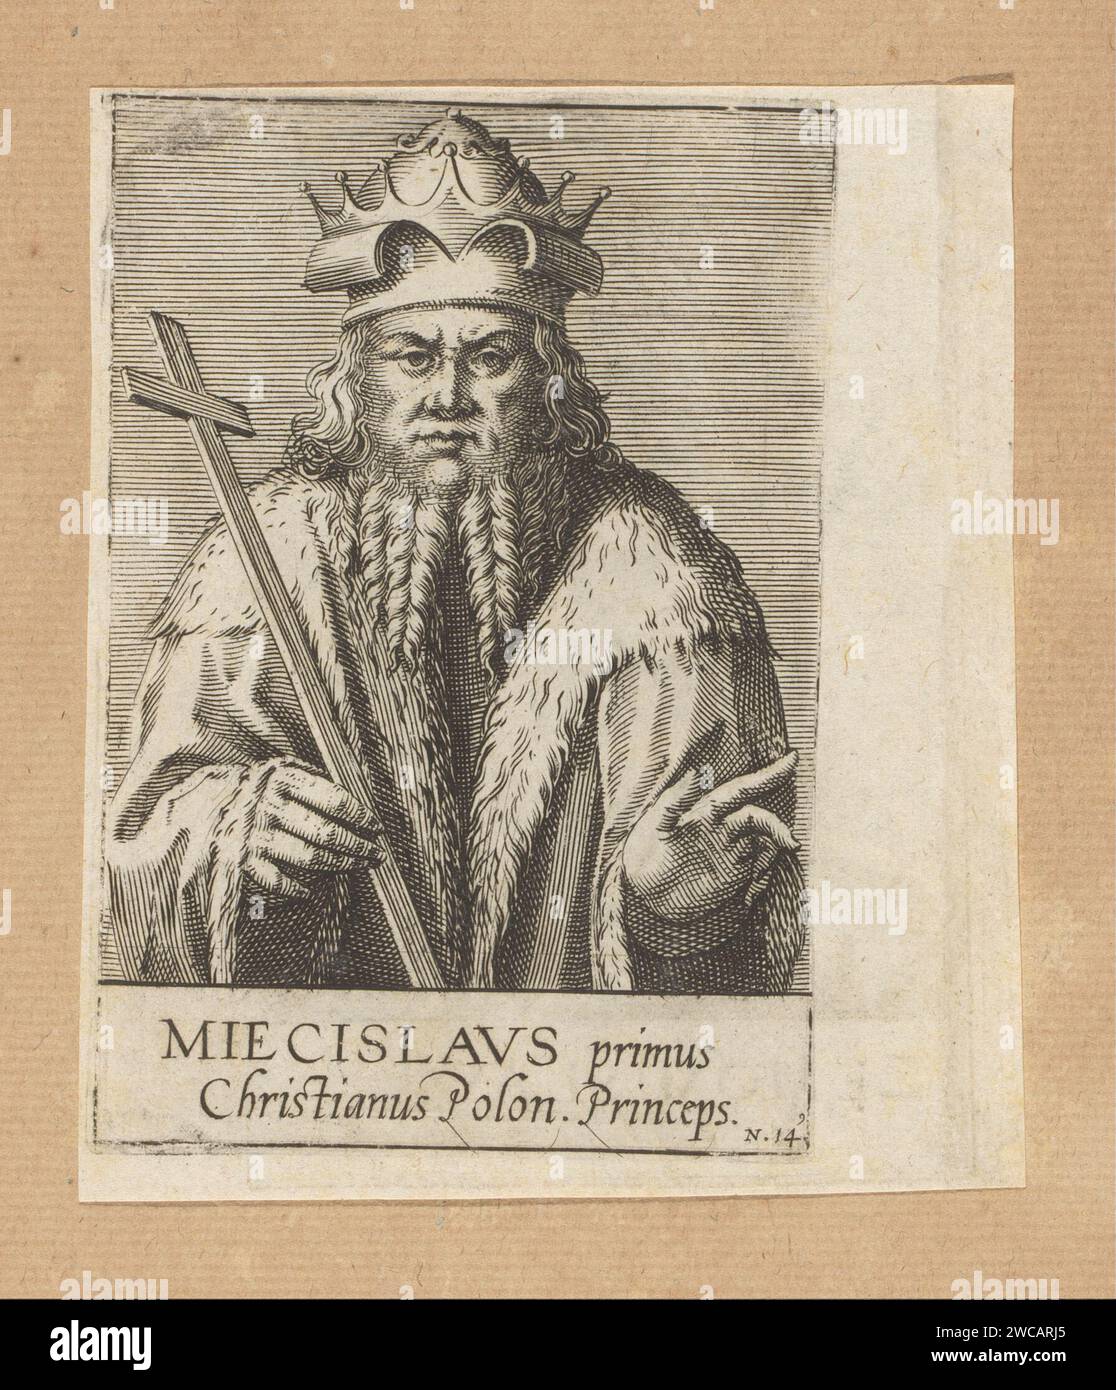 Ritratto di Mieszko i, anonimo, dopo Johann Hogenberg, 1574 - 1594 stampa numerata: 14. La stampa fa parte di un album. Carta di Colonia persone storiche. re Foto Stock